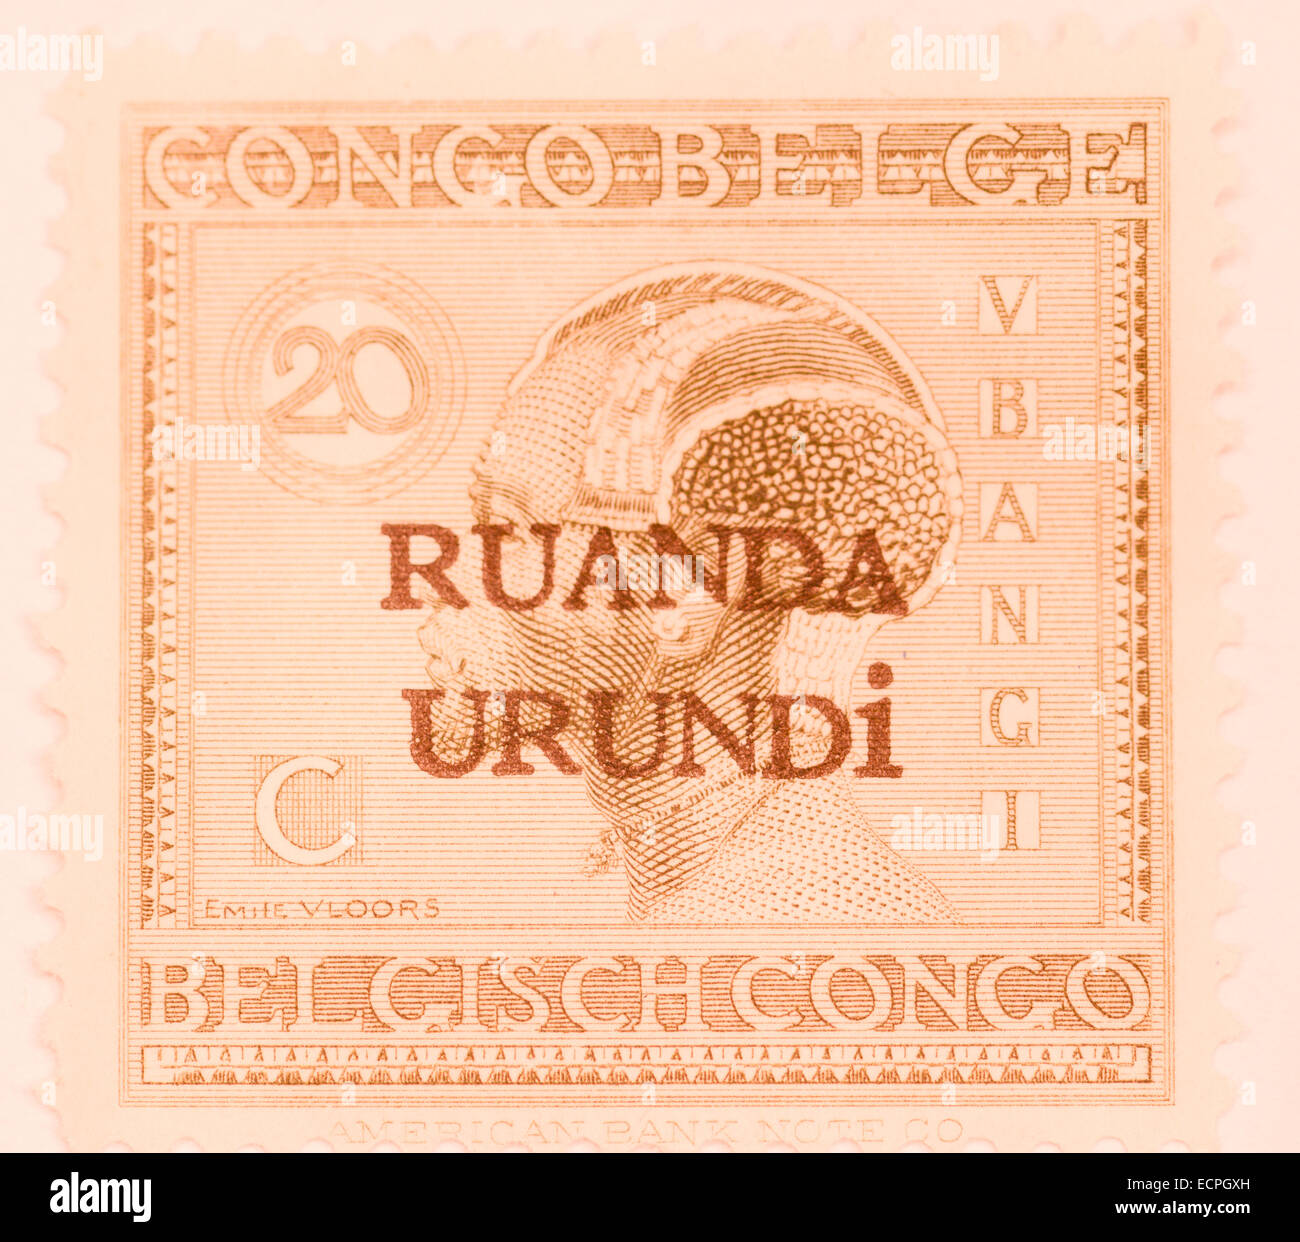 old belgium stamp from colony ruanda and urundi Stock Photo